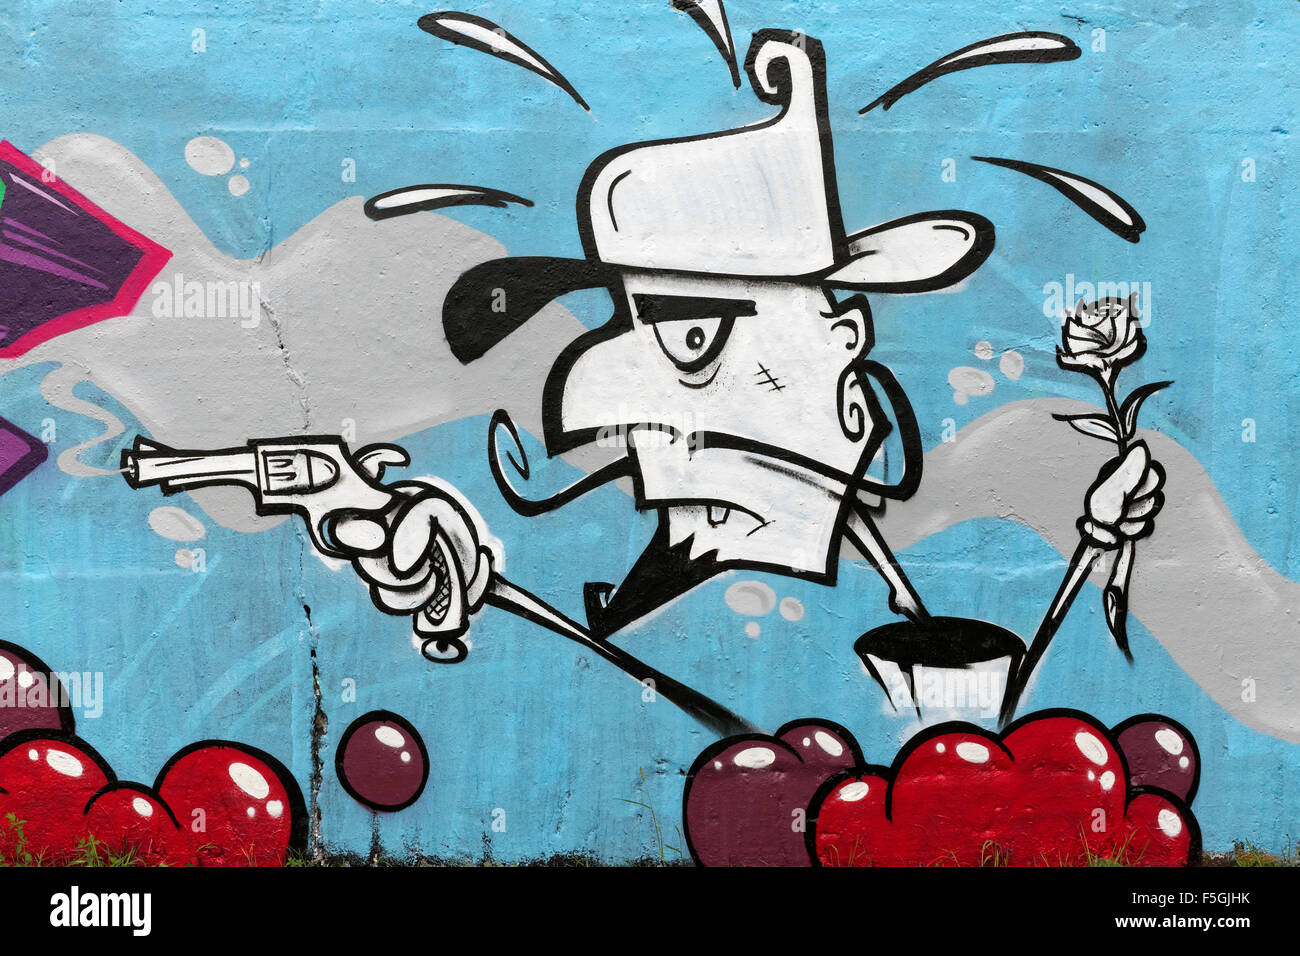 Personaggio dei fumetti con la pistola e rose, graffiti, arte di strada, Duisburg, distretto della Ruhr, Nord Reno-Westfalia, Germania Foto Stock